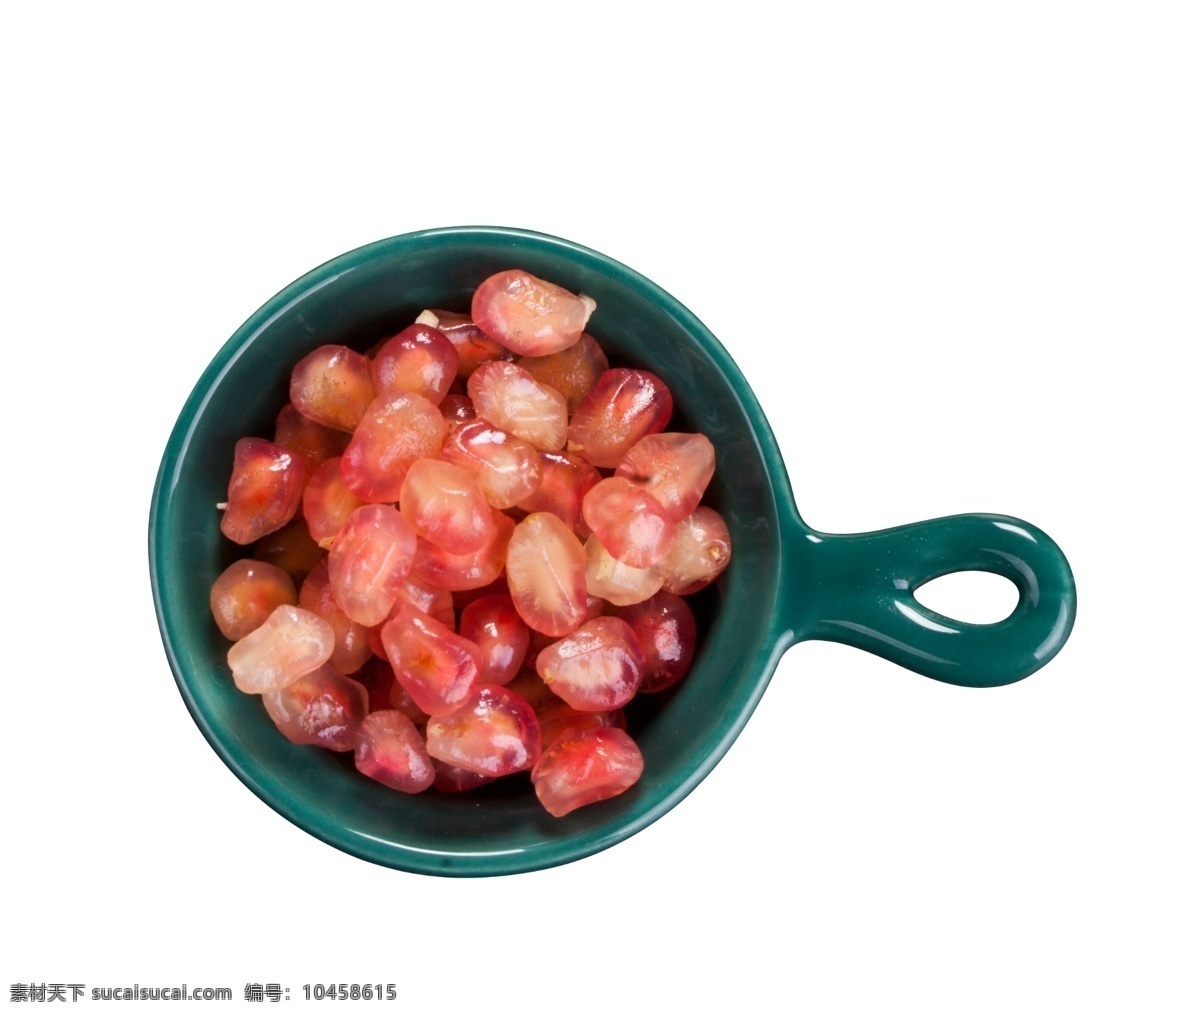 陶瓷器 里面 石榴 粒 红色的水果 新鲜水果 自然草莓 可口 新鲜 果实 果蔬 水果